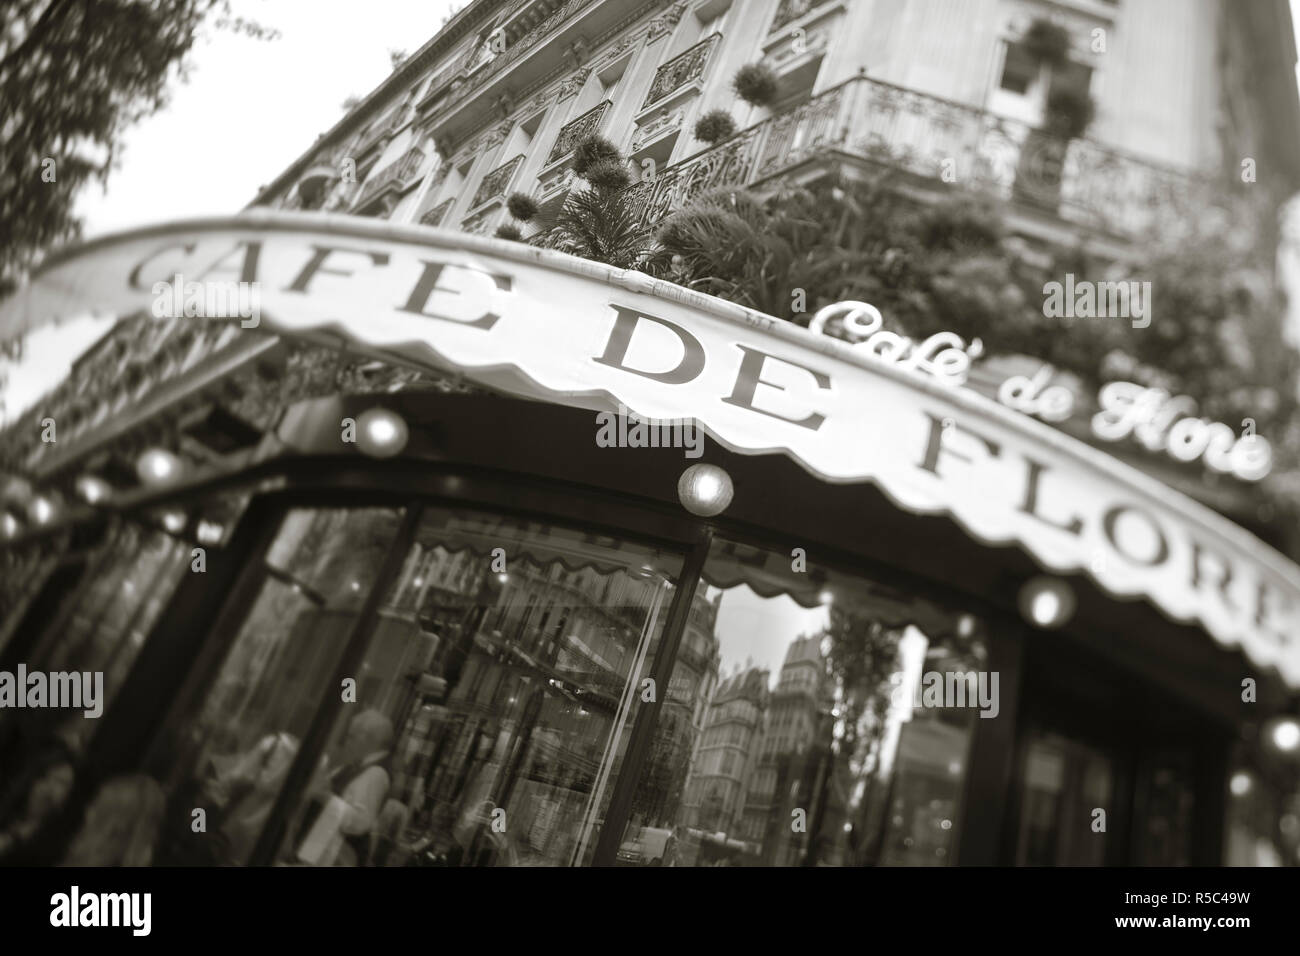 Café de Flore, Boulevard St Germain, Paris, France Banque D'Images